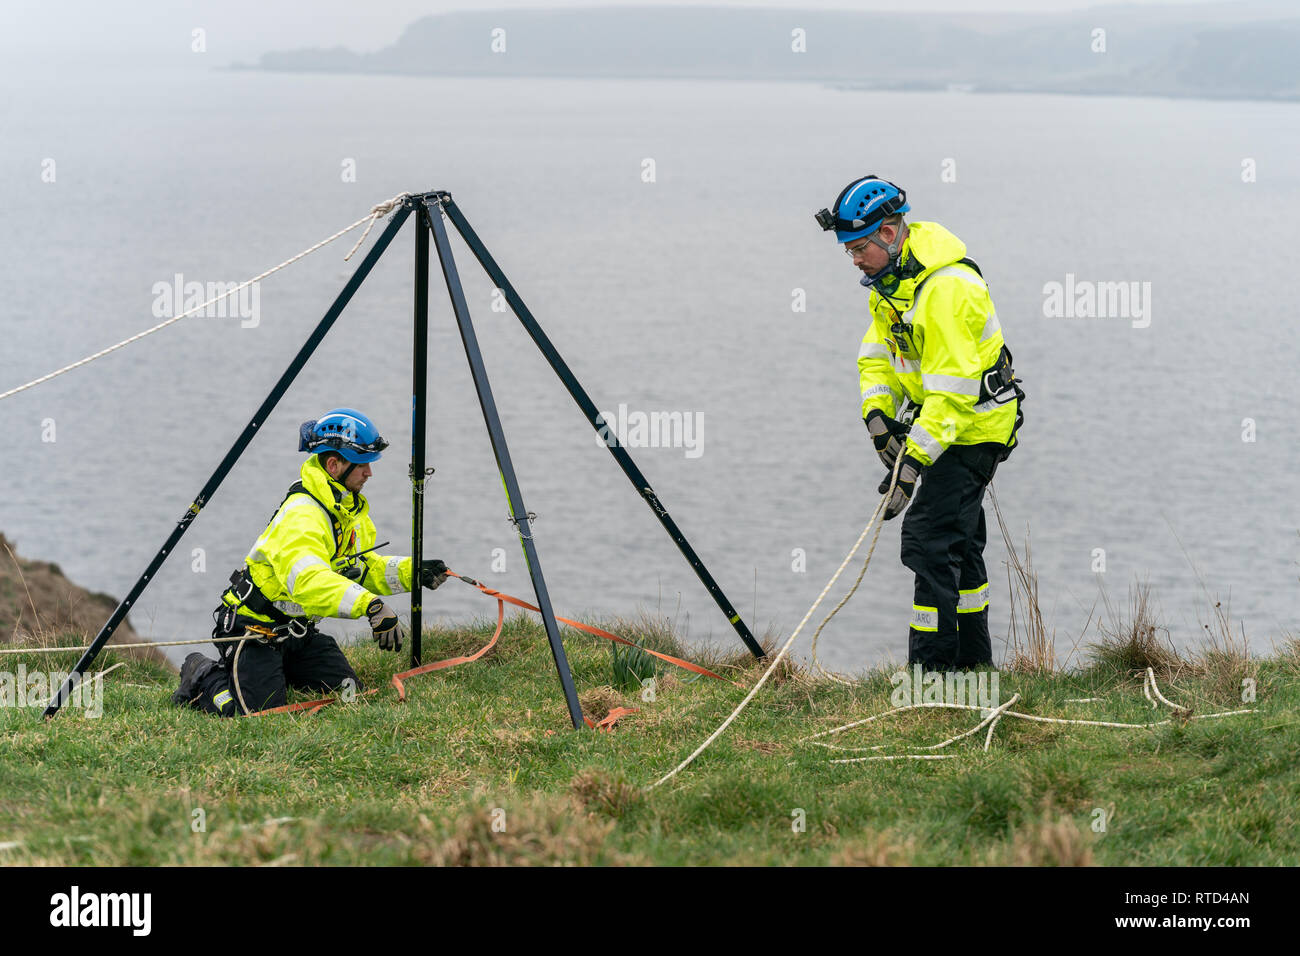 Dies ist die Küstenwache Suche und Rettung auf einer Übung relativ zu einer Klippe Rettung bei Portknockie, Moray, Schottland am 28. Februar 2019. Stockfoto